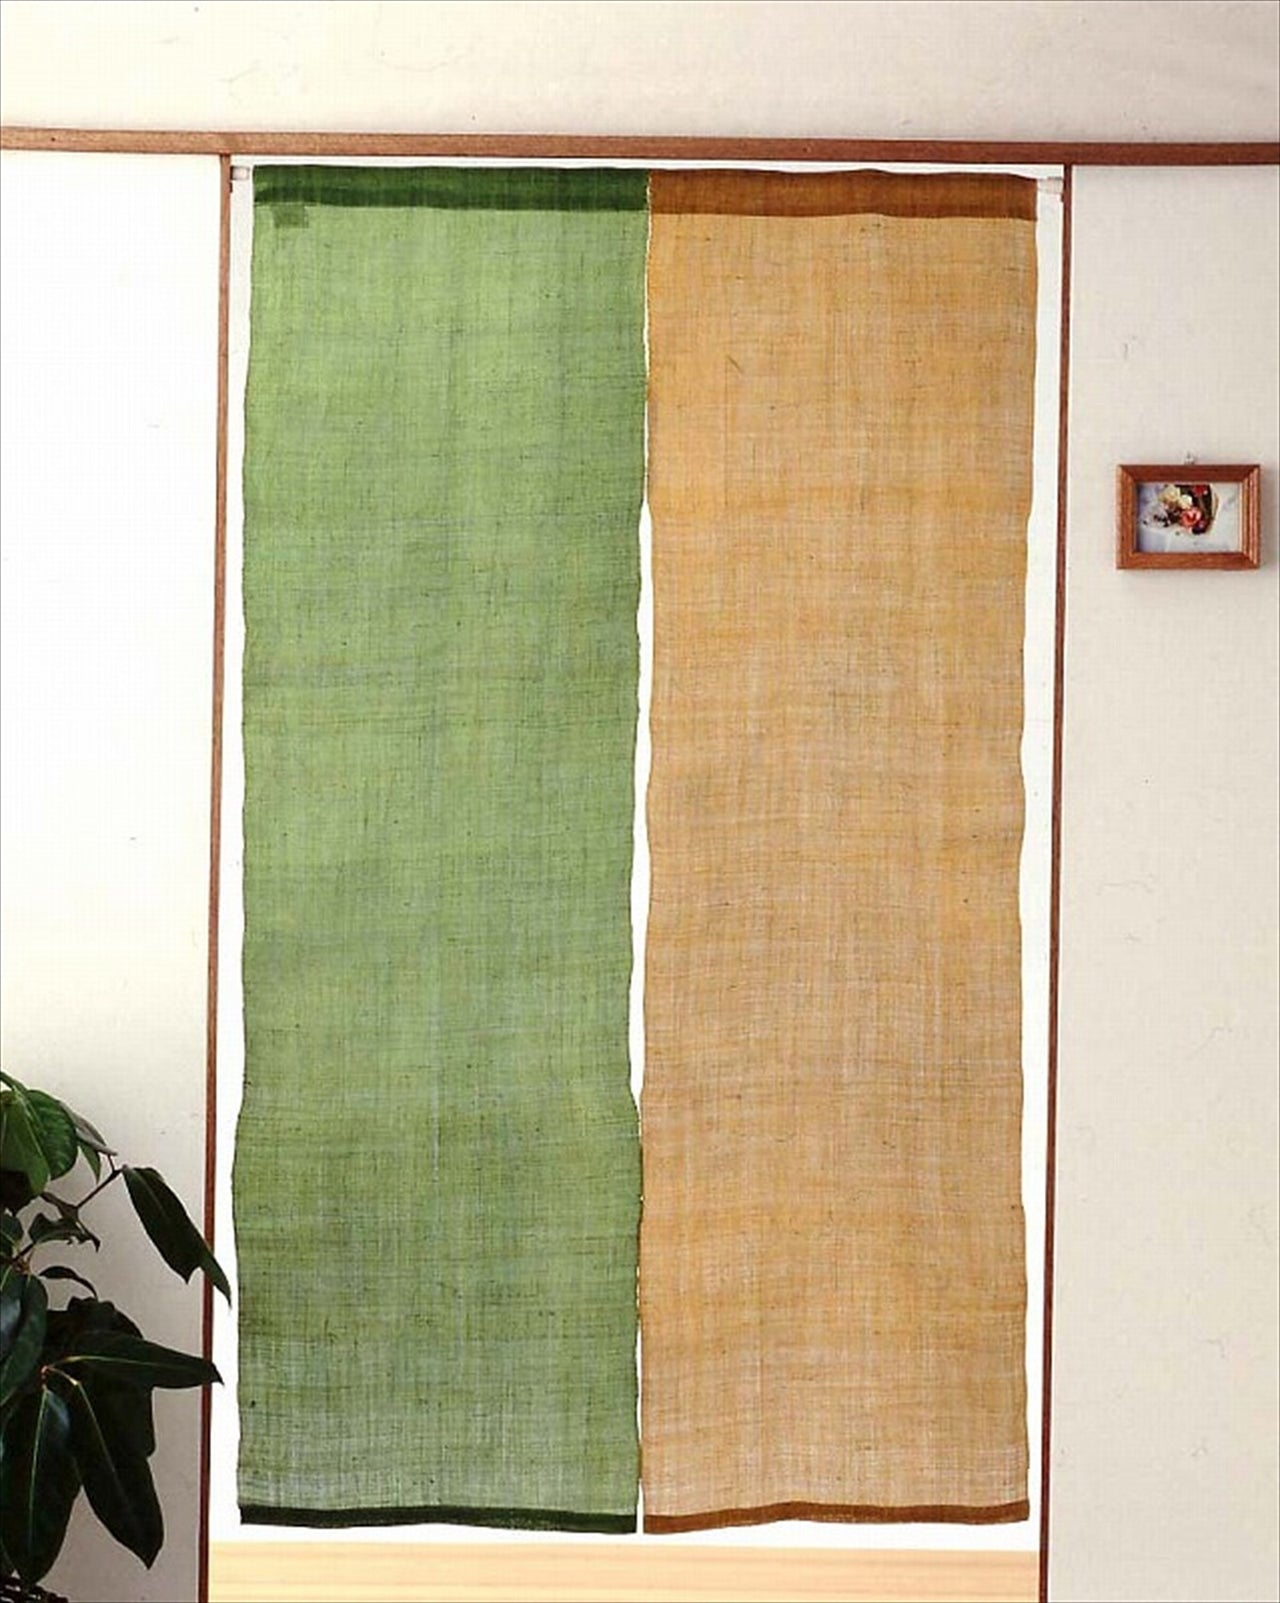 100％ Linen Japanese art Modern tapestry 90×170cm Noren door curtain Wall hanging